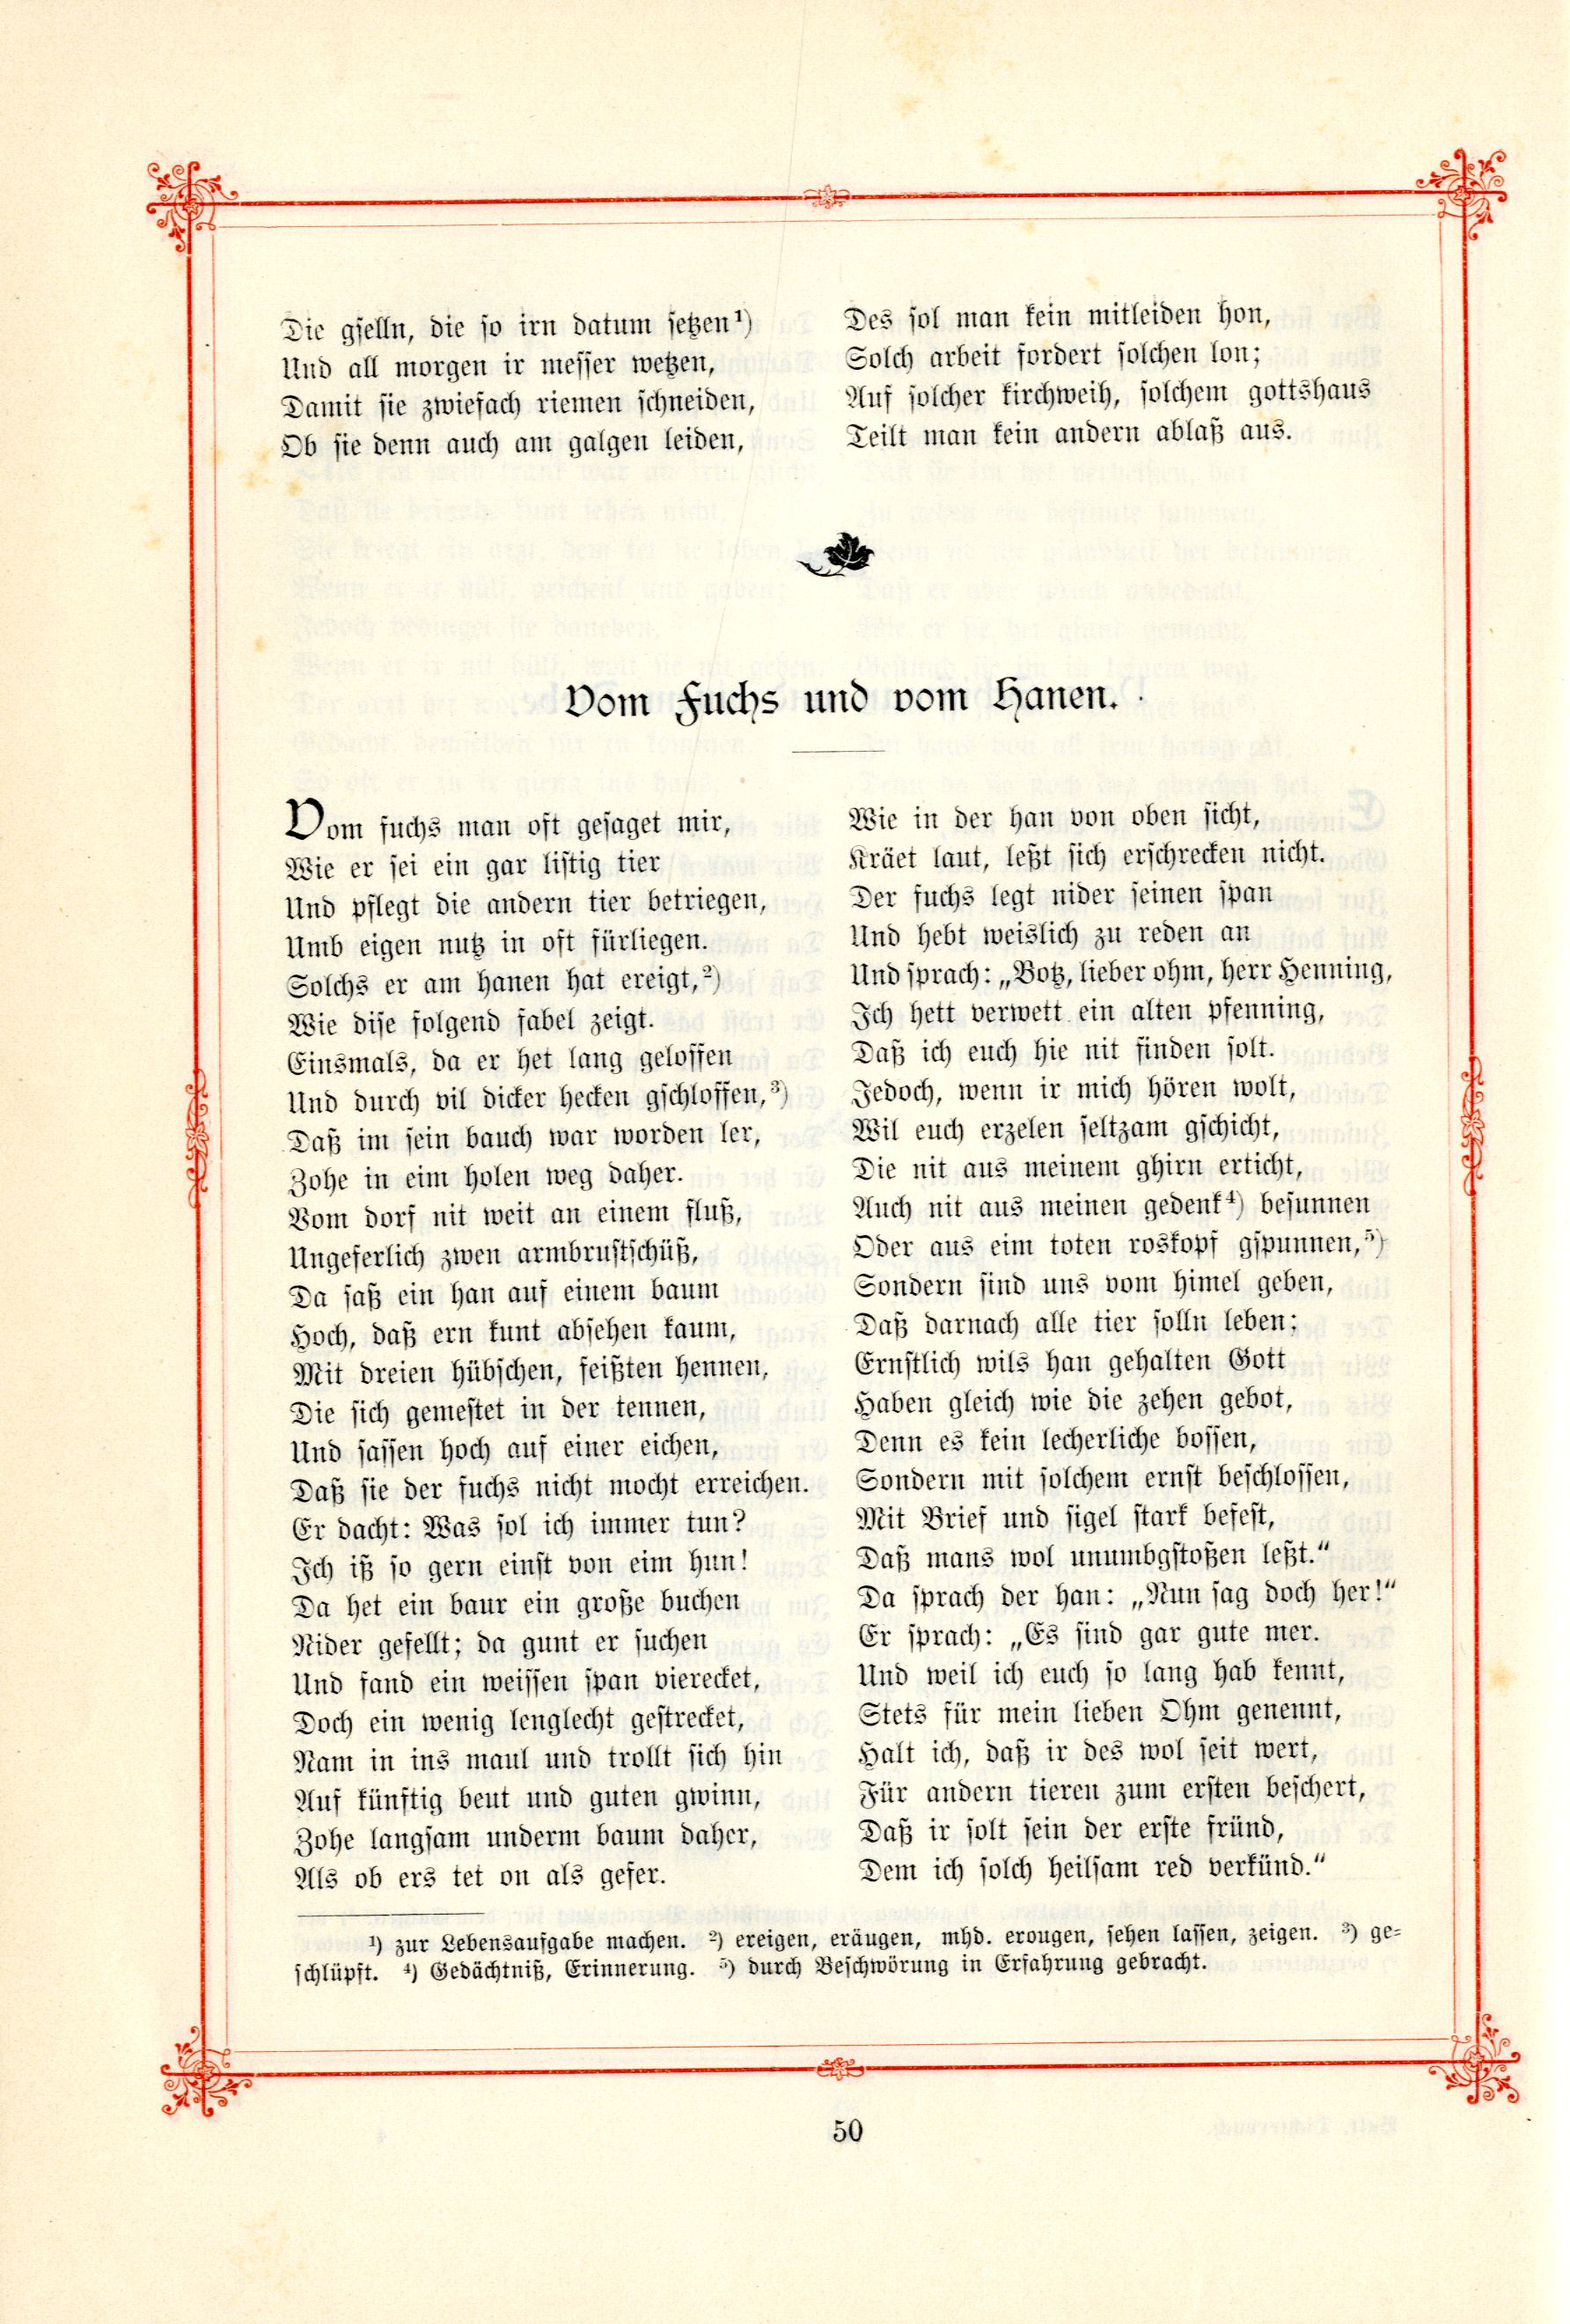 Das Baltische Dichterbuch (1895) | 96. (50) Main body of text